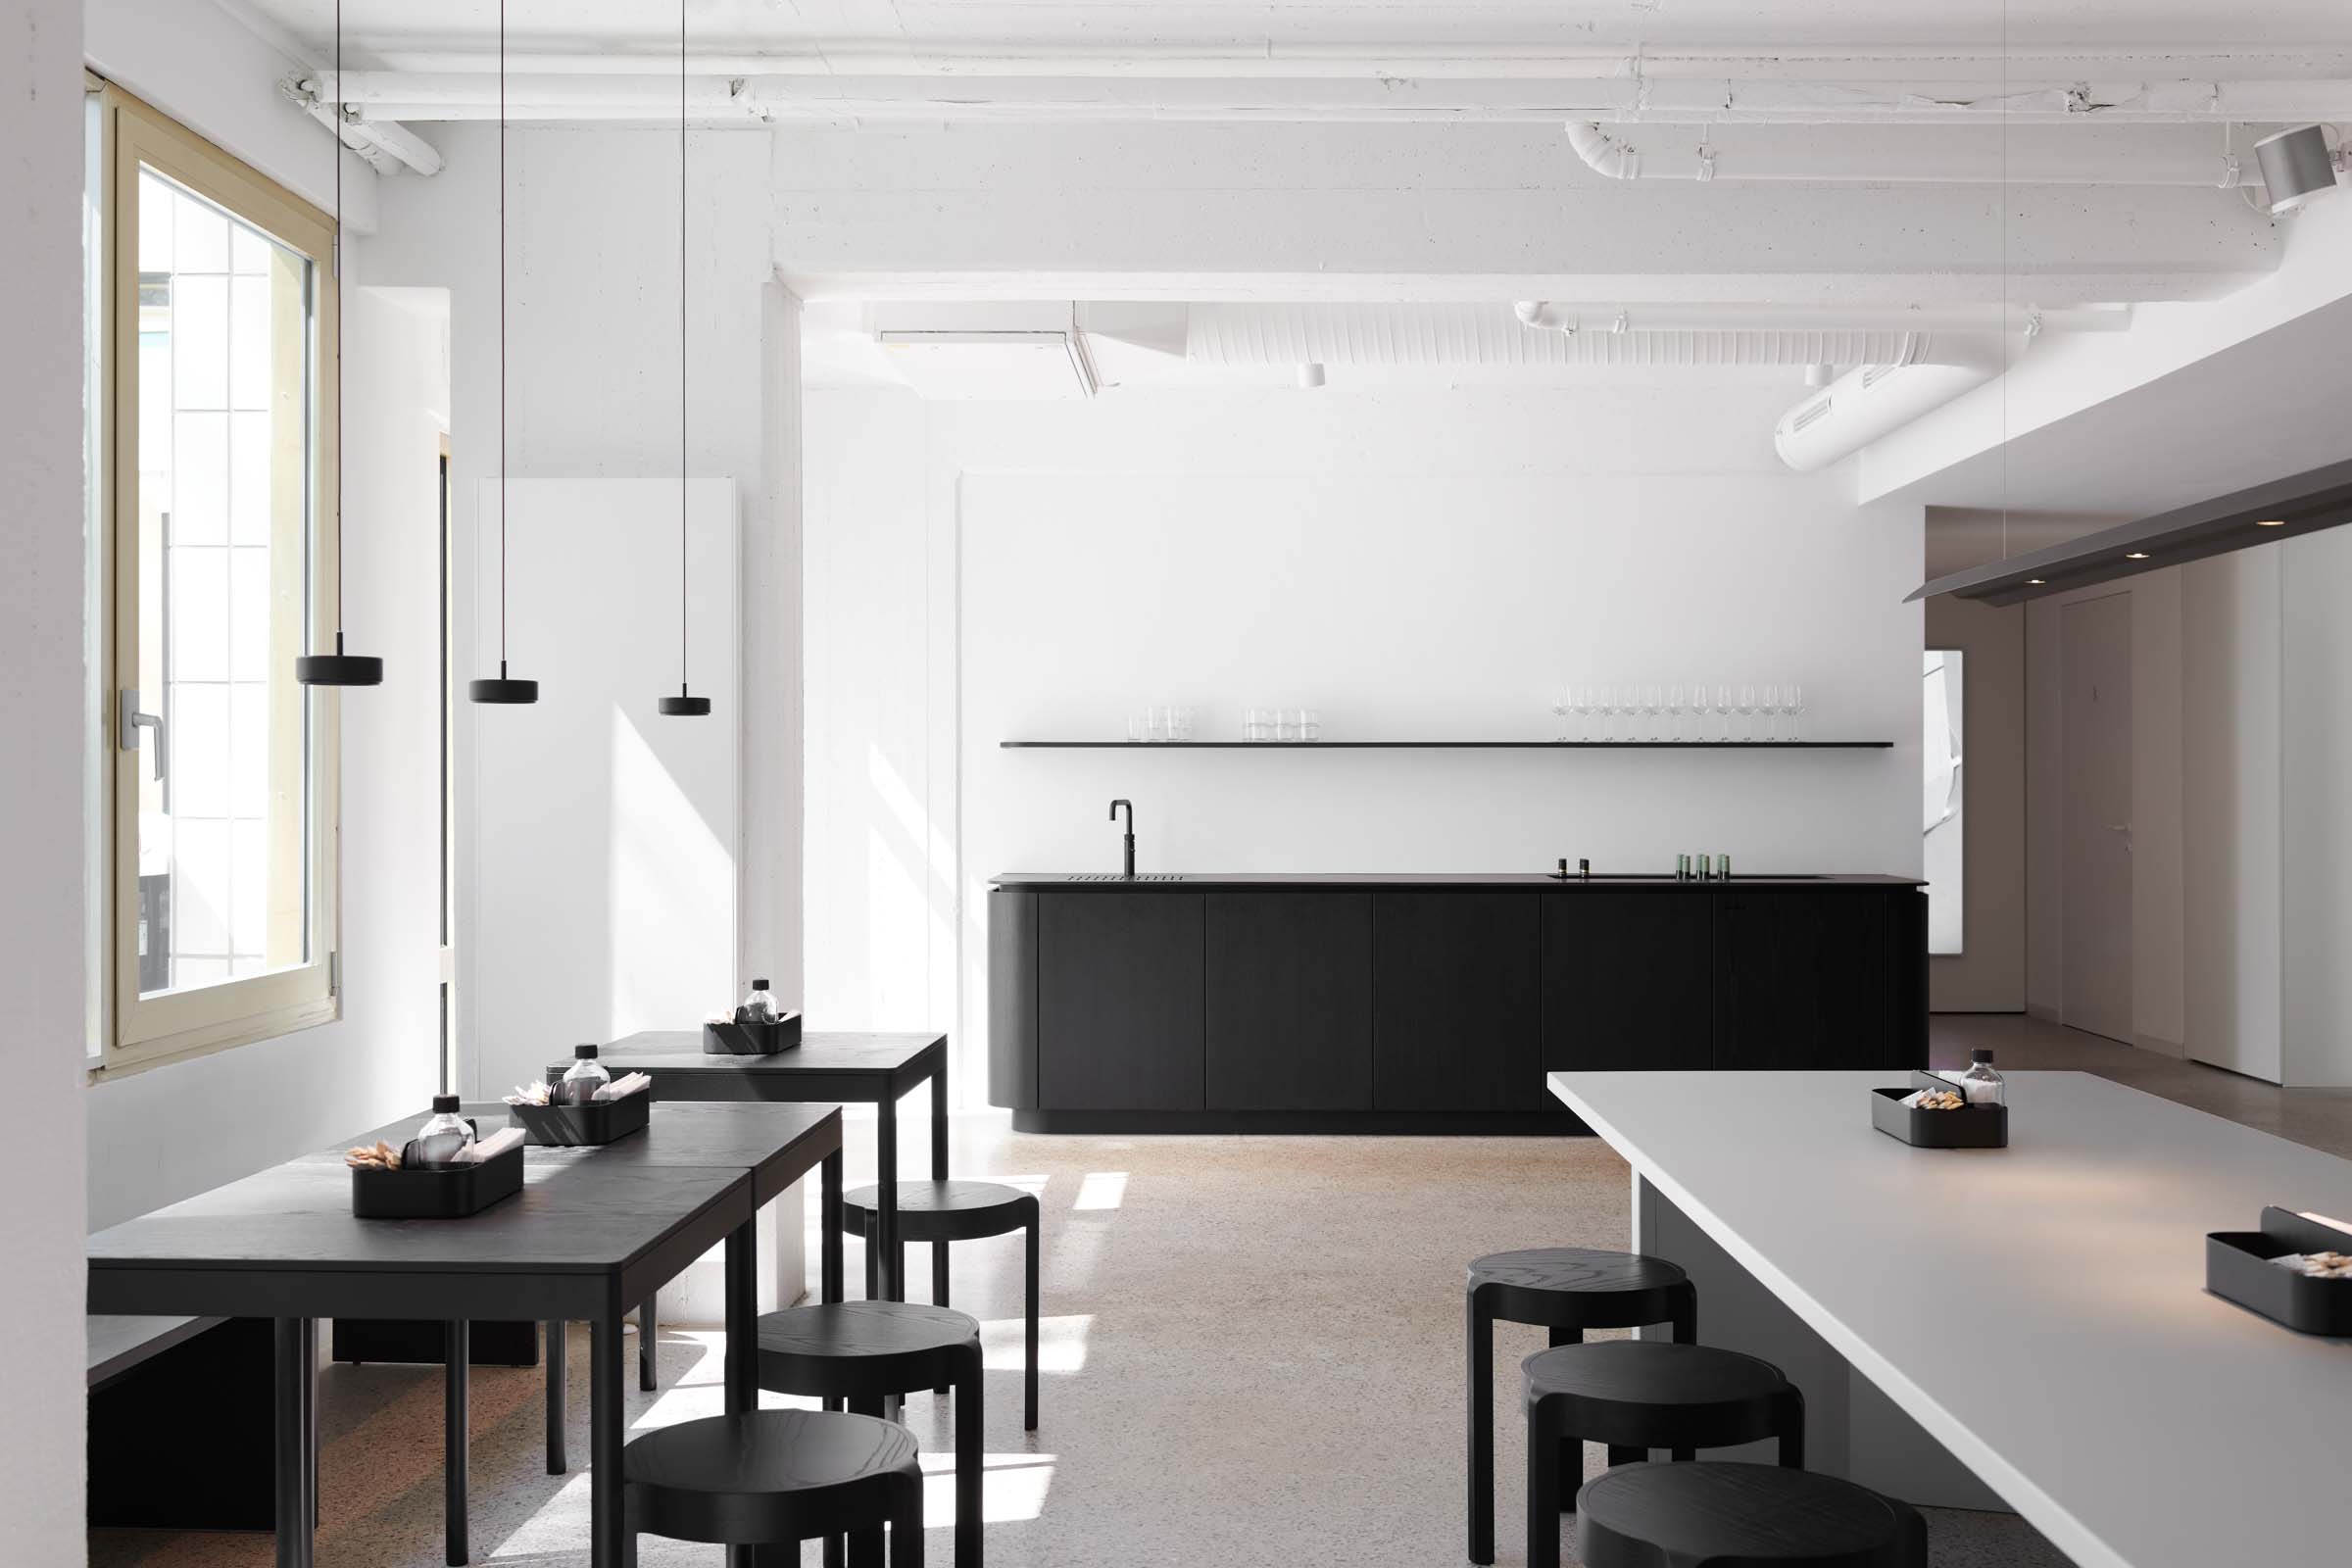 Gerdesmeyer Krohn
Office for Design Sushi Ninja, Restaurant